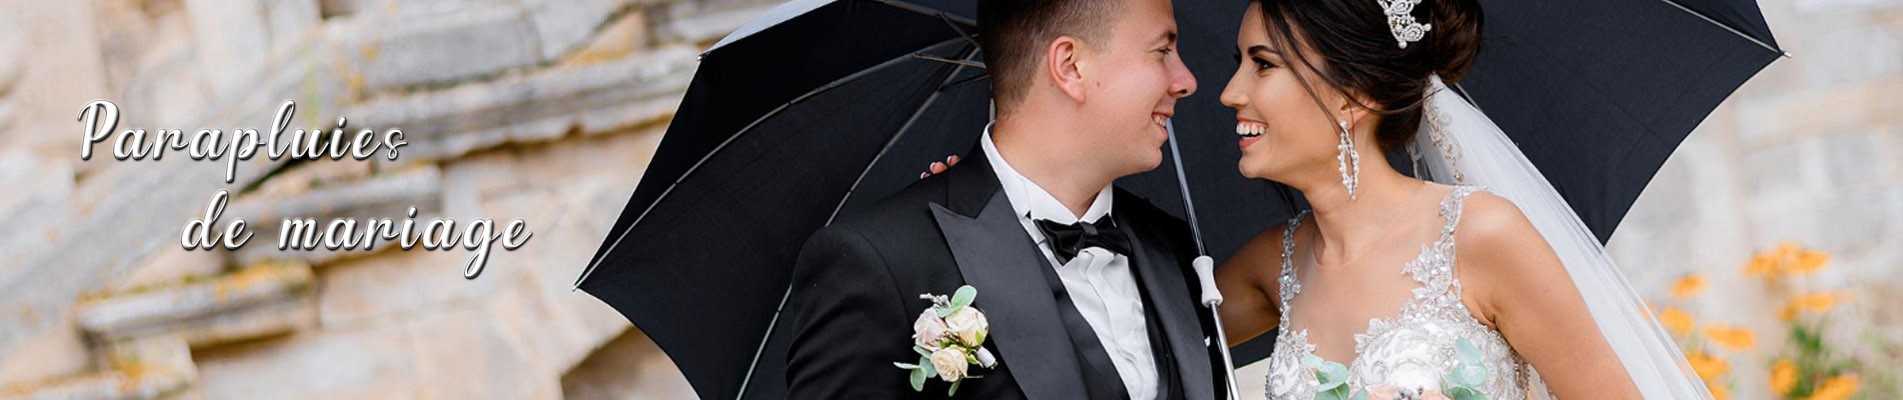 Parapluies de mariage : transparents ou en forme de coeur